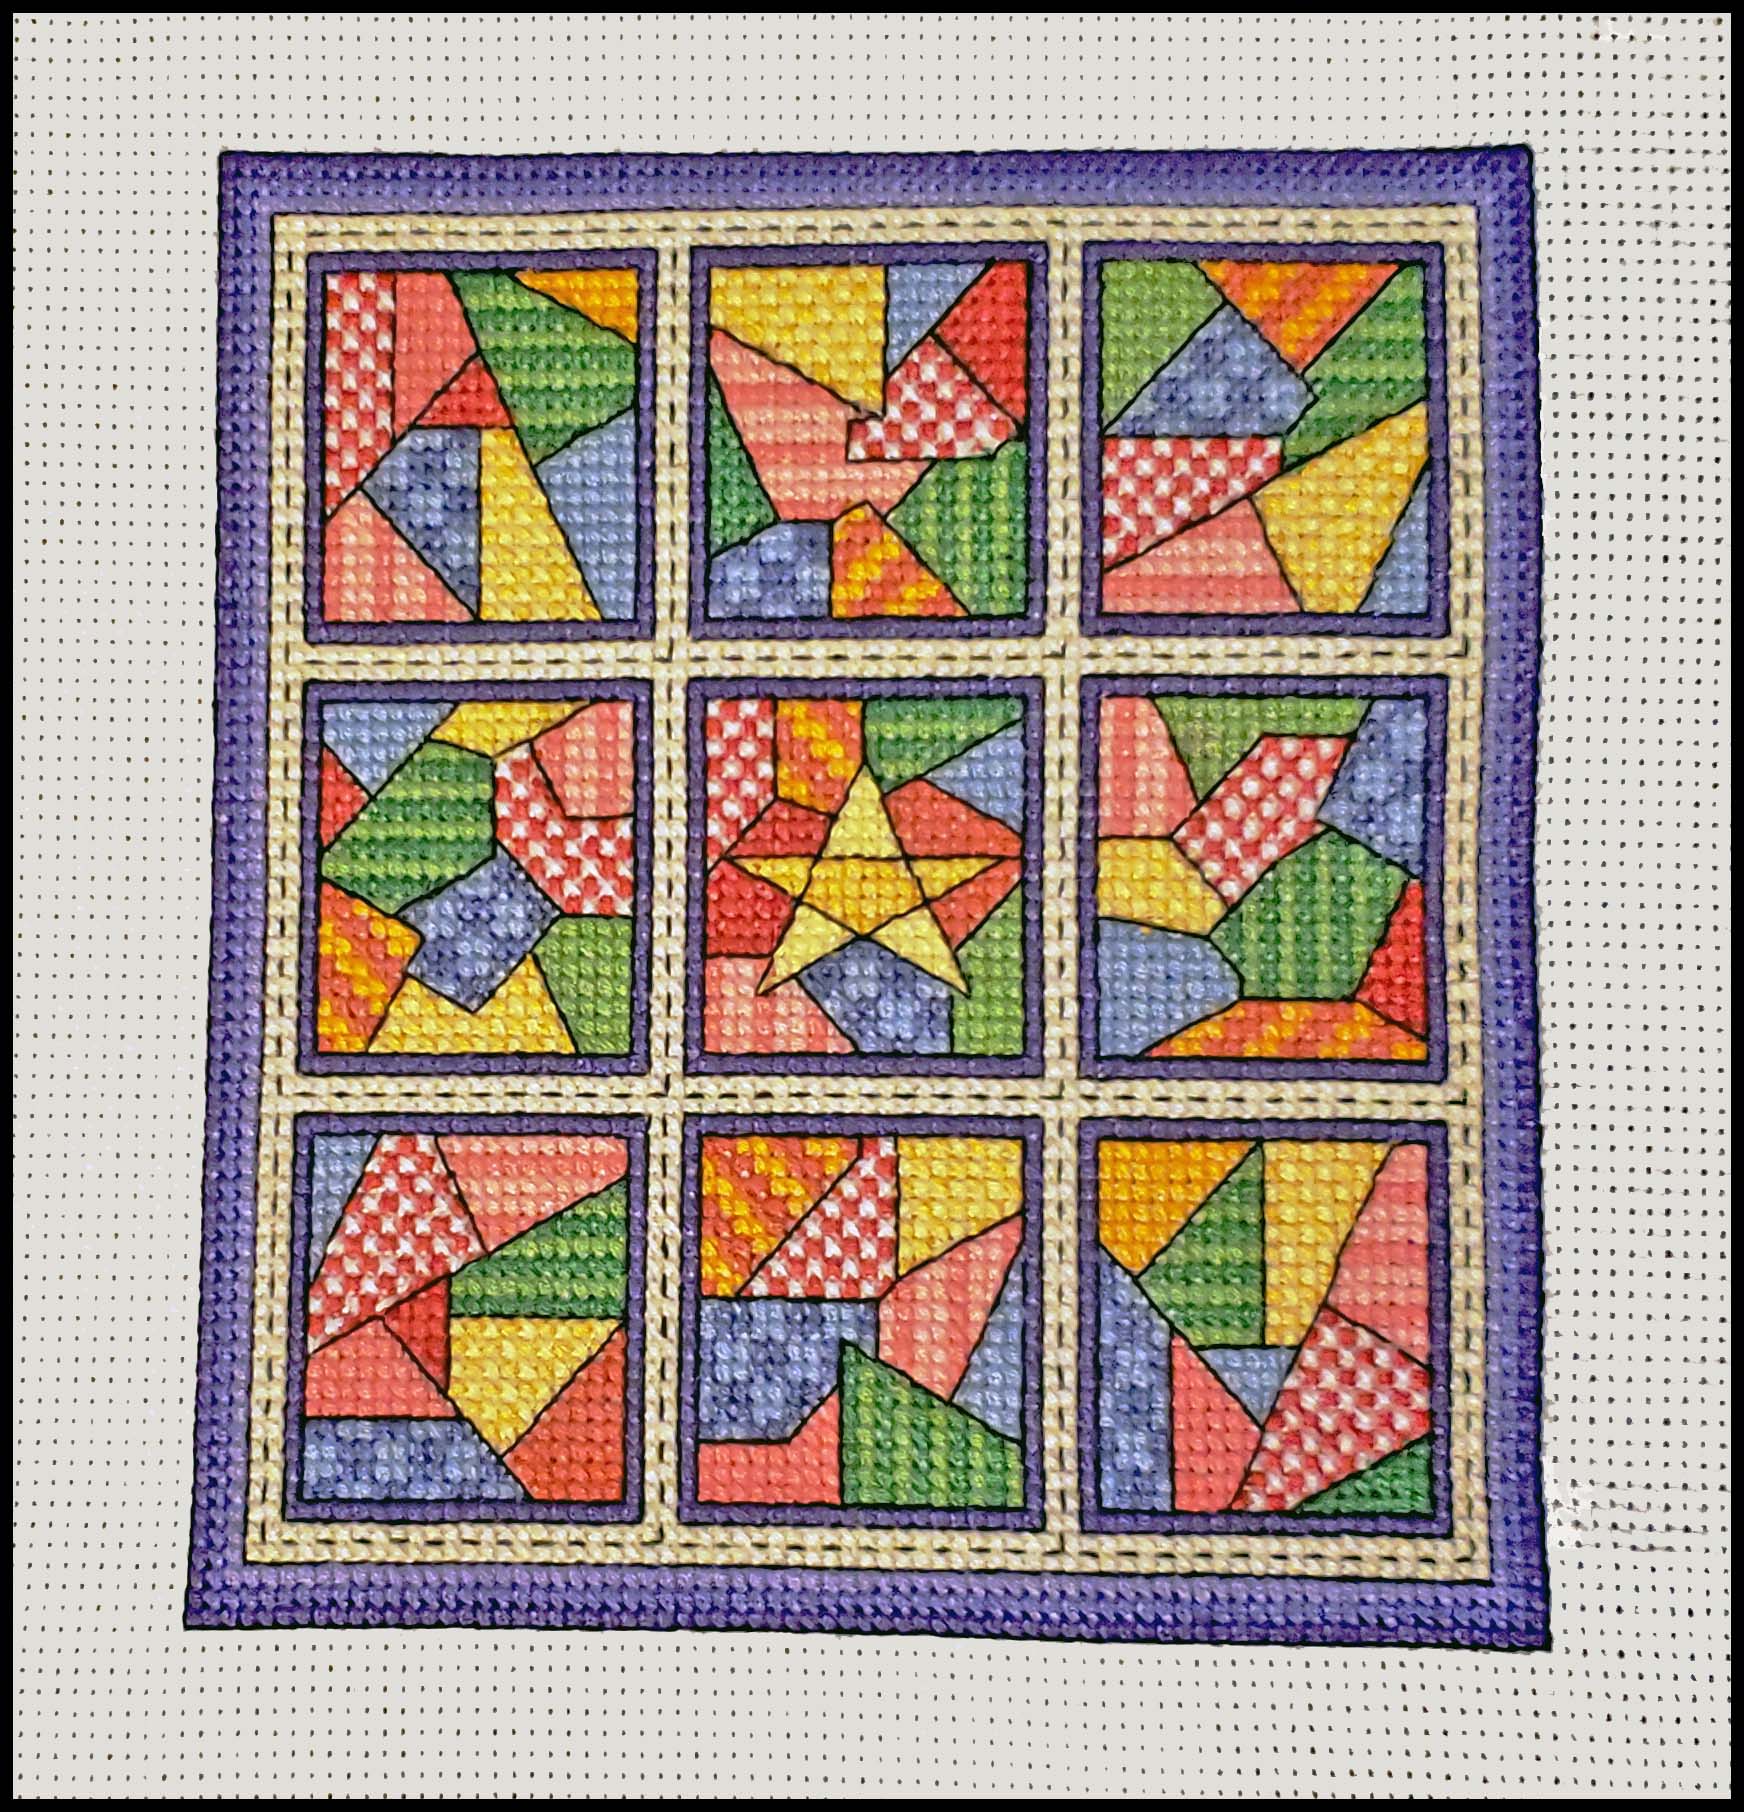 Jigsaw / Quilt Blocks 14 - Cross Stitch Pattern